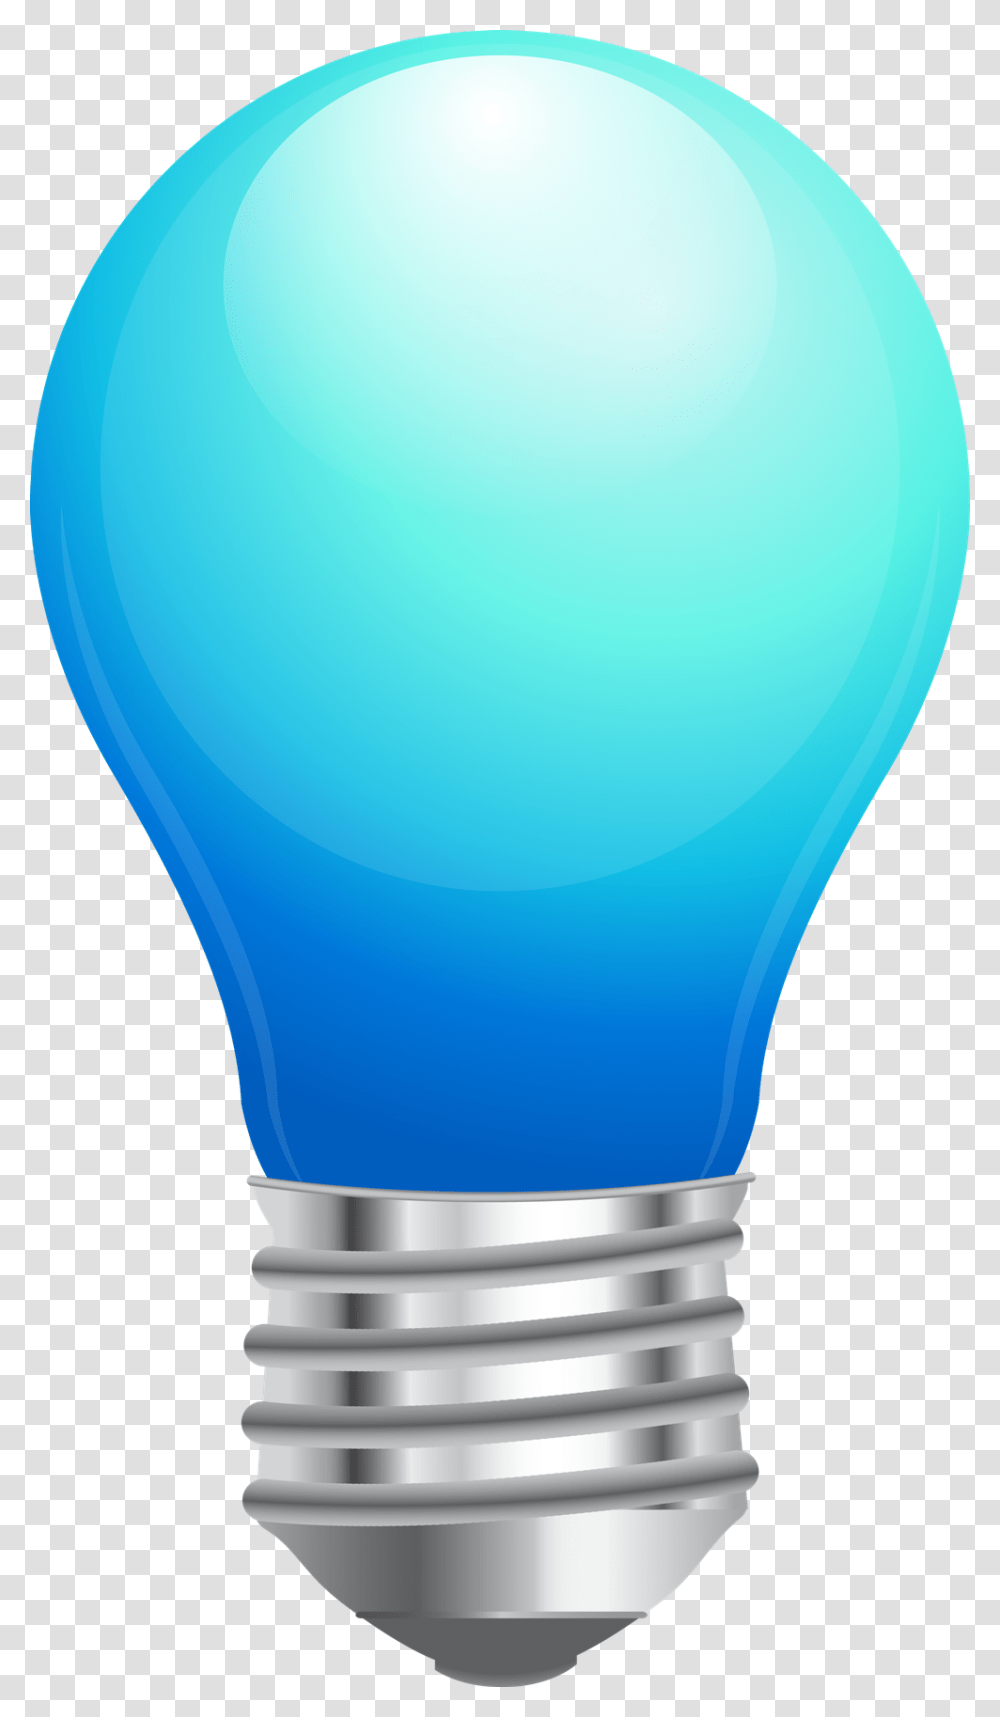 Light Bulb Image Free Download Best Light Bulb Image Blue Light Bulb Clip Art, Balloon, Lightbulb Transparent Png